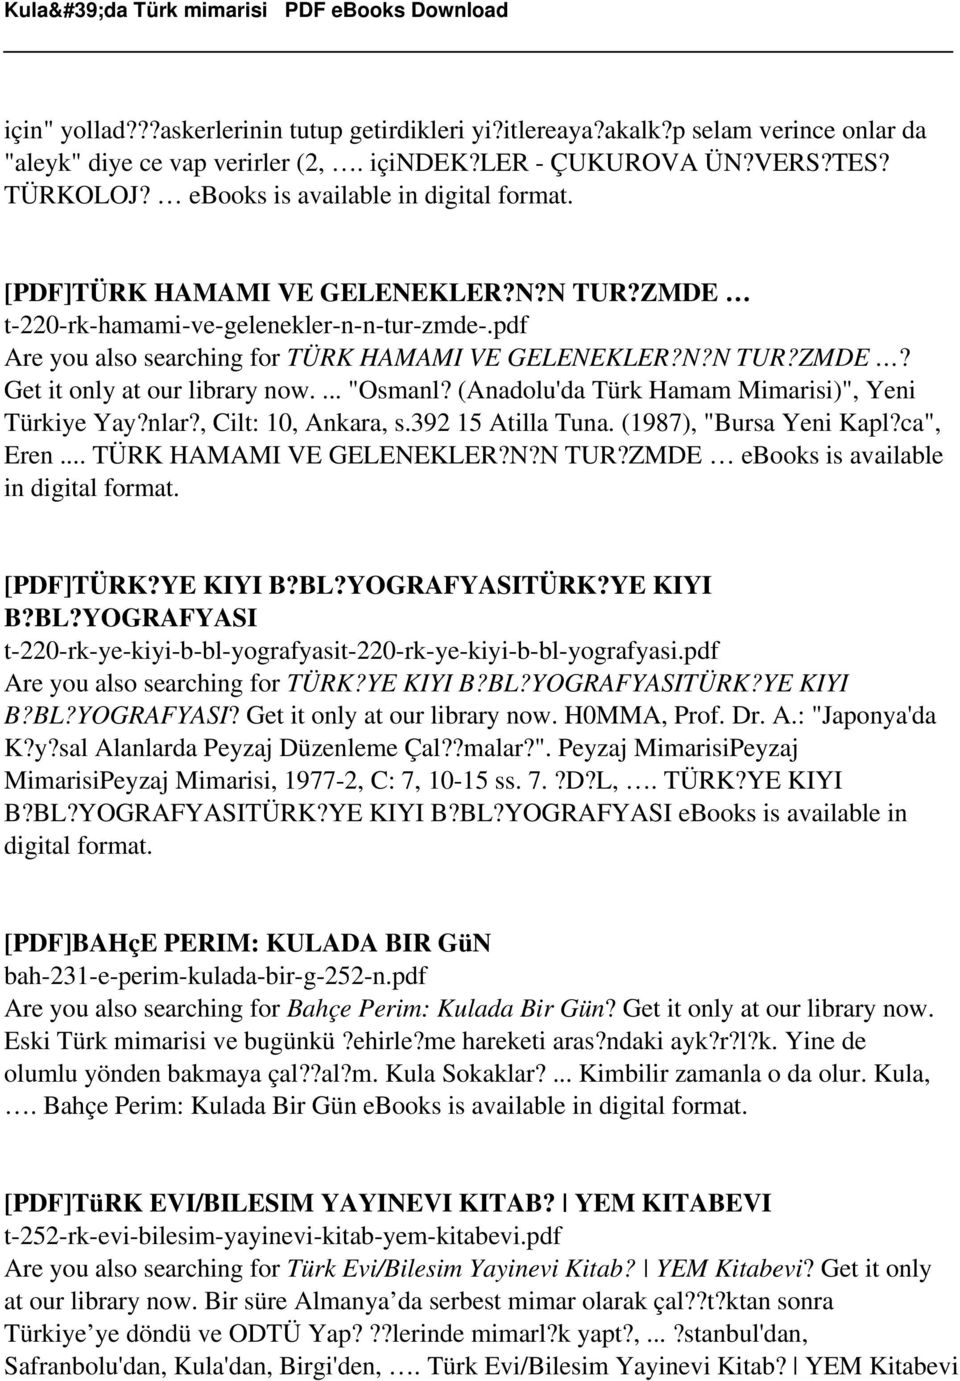 (Anadolu'da Türk Hamam Mimarisi)", Yeni Türkiye Yay?nlar?, Cilt: 10, Ankara, s.392 15 Atilla Tuna. (1987), "Bursa Yeni Kapl?ca", Eren... TÜRK HAMAMI VE GELENEKLER?N?N TUR?